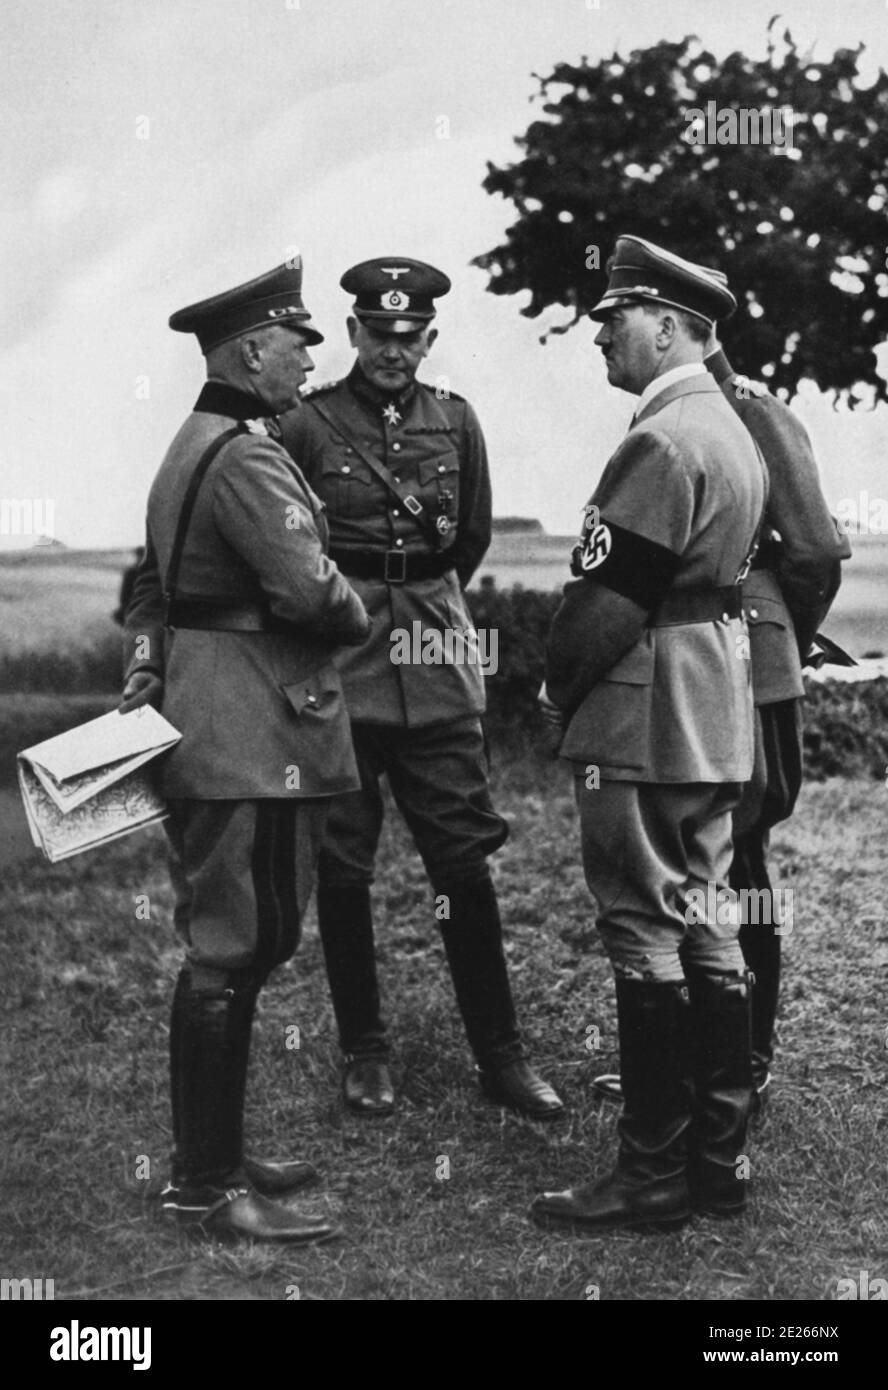 Hitler, von Fritsch et von Blomberg 1935 lors des manoeuvres sur le cours d'entraînement militaire Munsterlager Banque D'Images